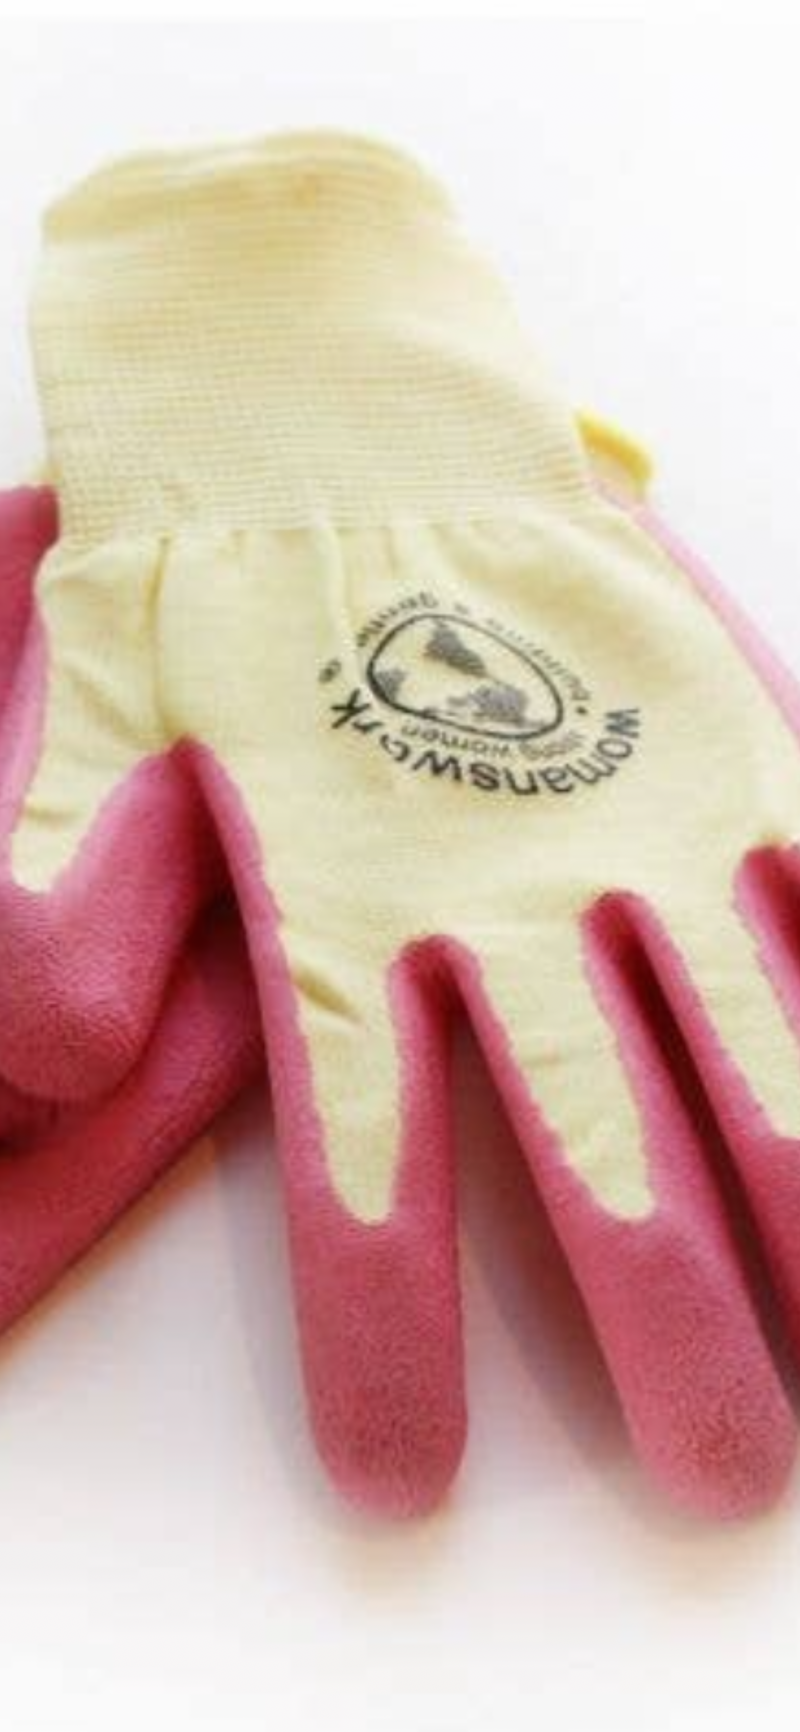 Women’s Work Gardening Gloves